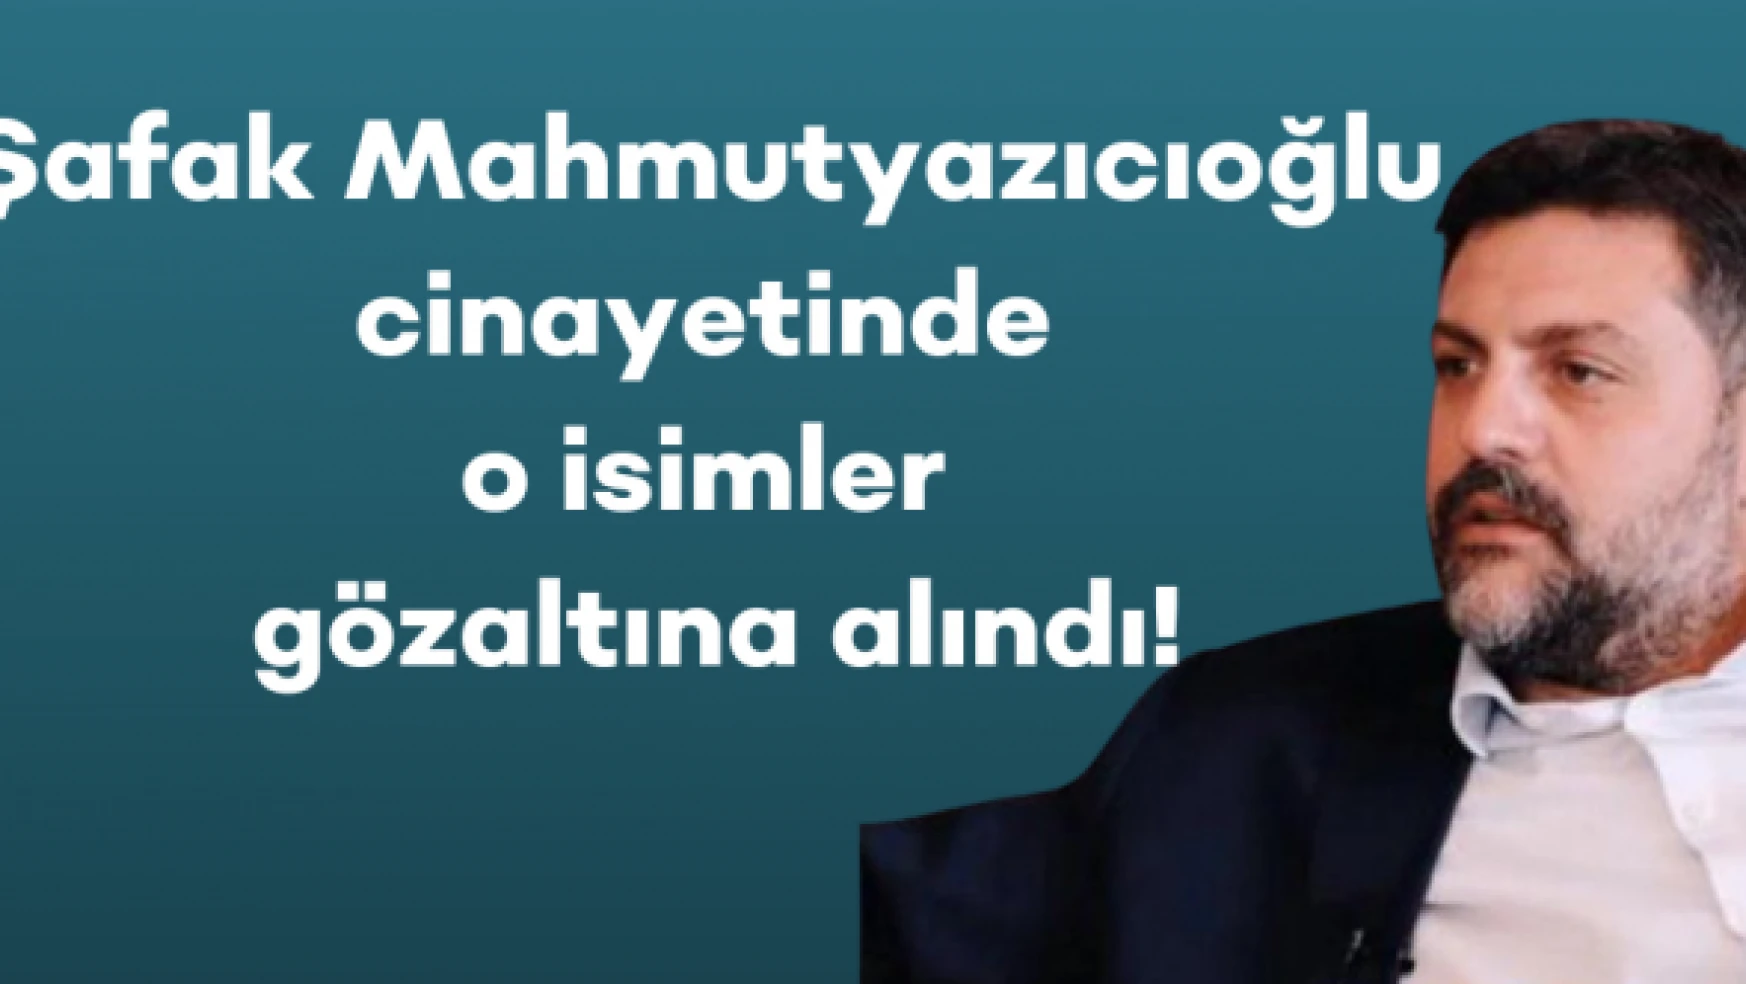 Şafak Mahmutyazıcıoğlu cinayetinde o isimler gözaltına alındı!